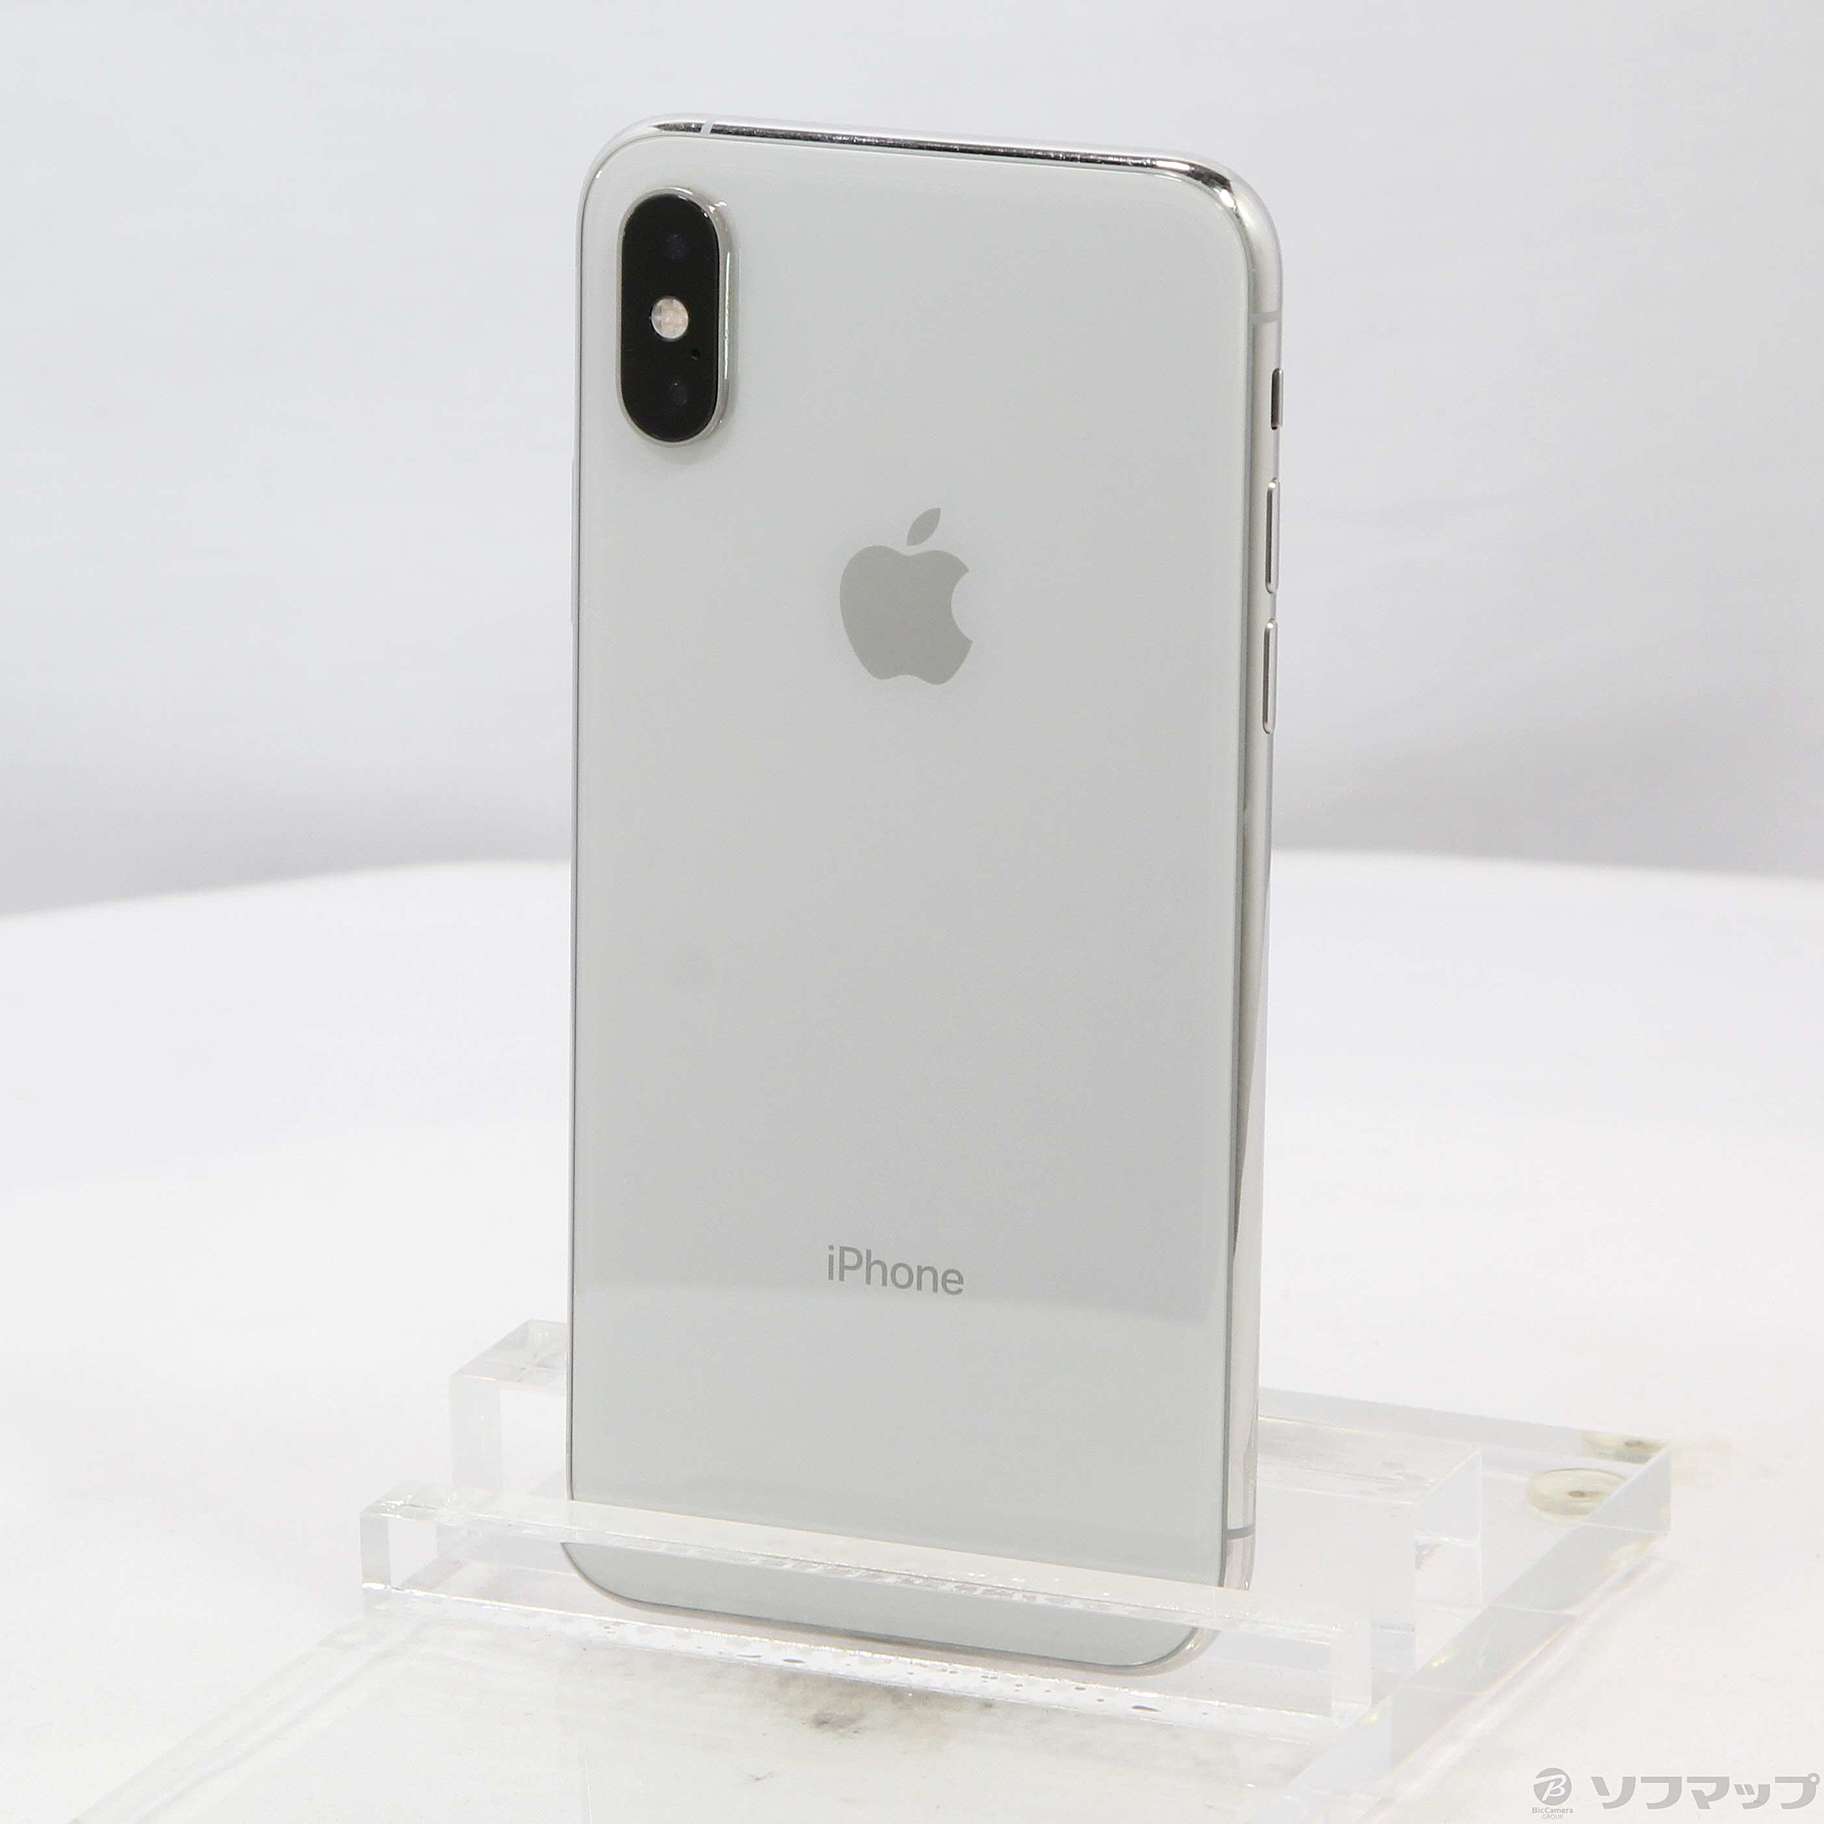 iPhone XS シルバー silver 256GB SIMフリー